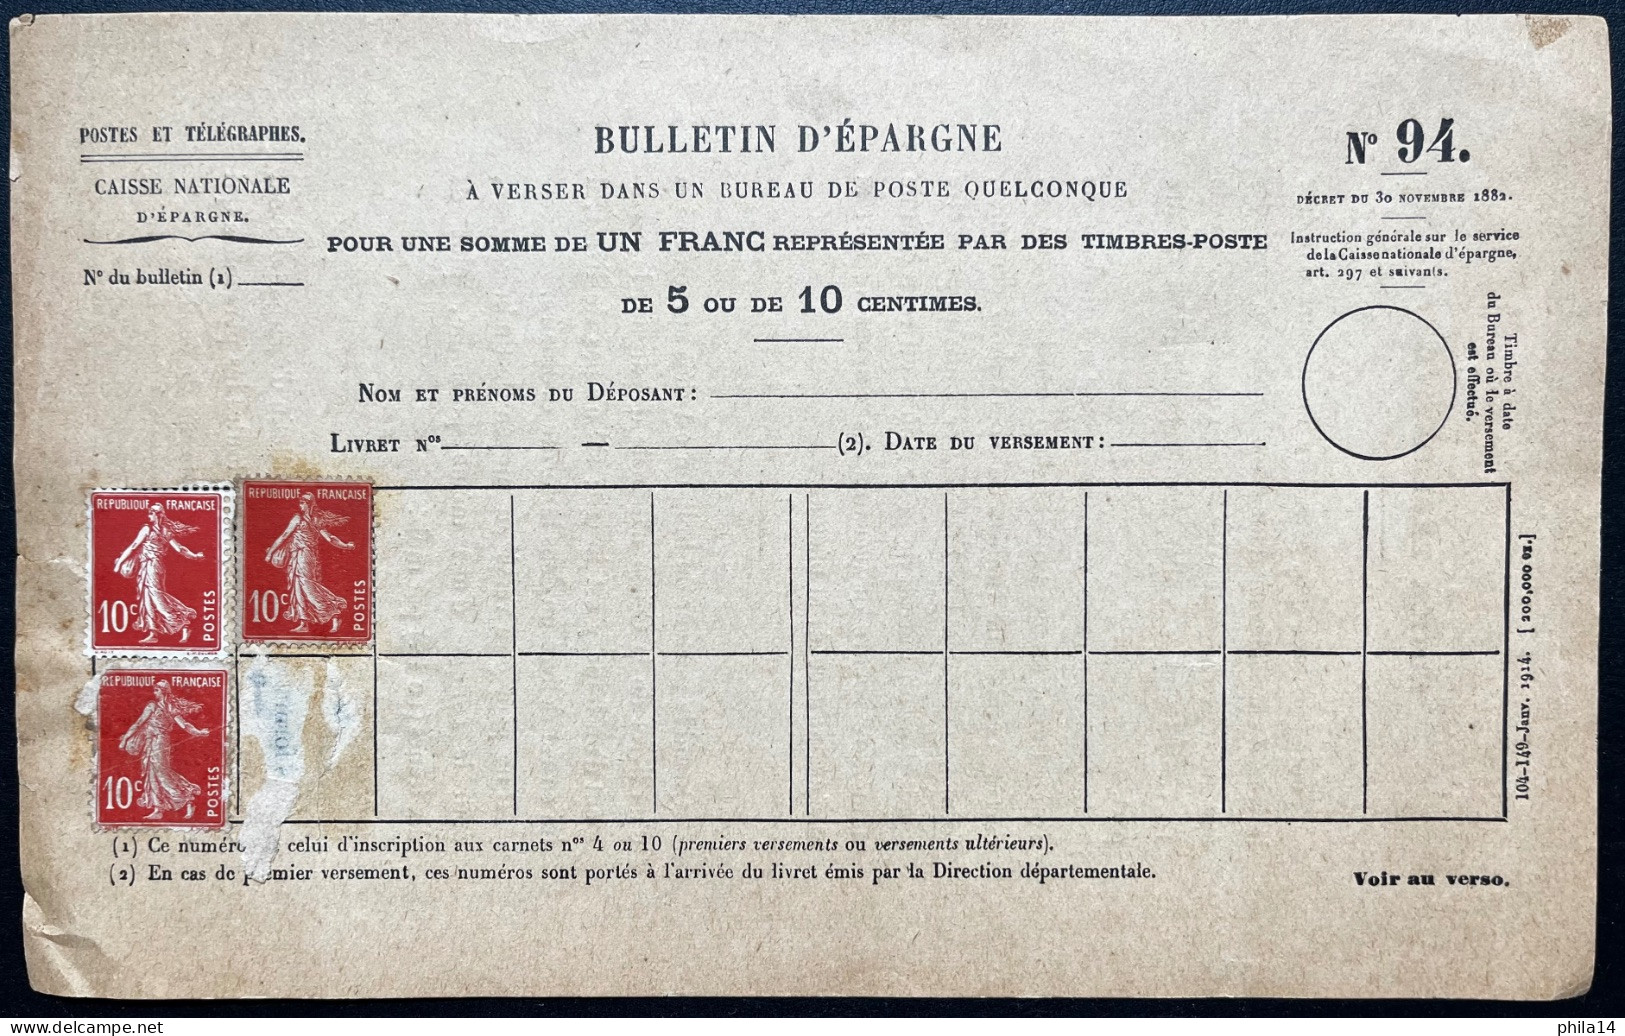 3X 10c SEMEUSE NEUFS SUR BULLETIN D'EPAGNE POSTES ET TELEGRAPHES N°94 - Documenten Van De Post